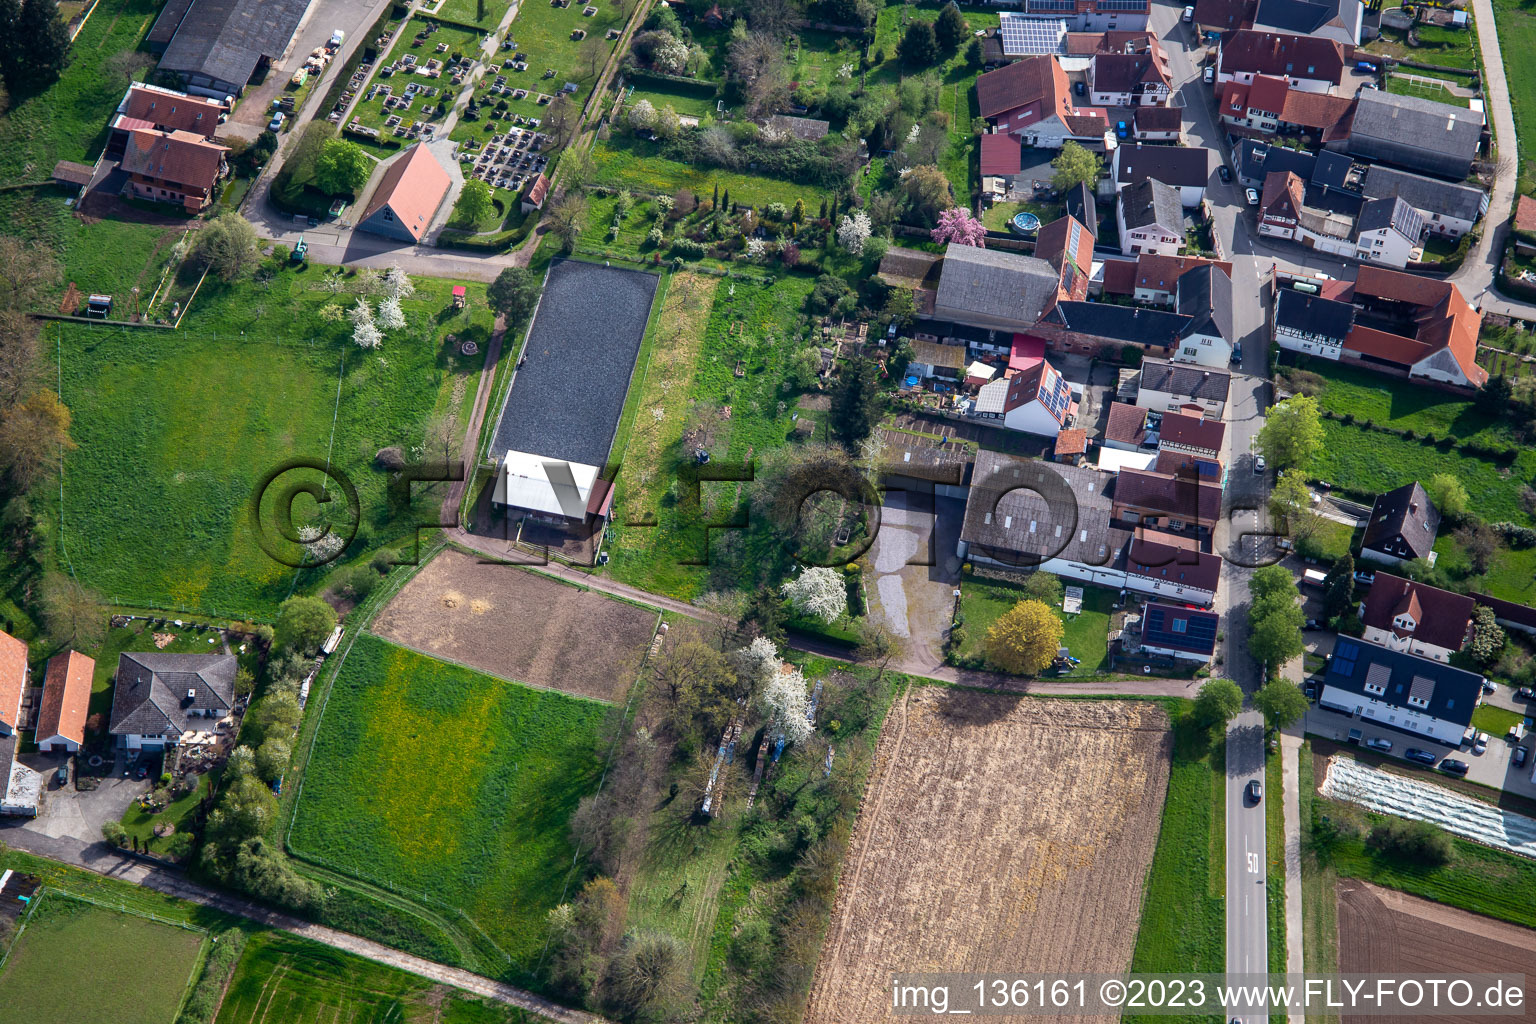 Reitanlage am Friedhof in Winden im Bundesland Rheinland-Pfalz, Deutschland aus der Luft